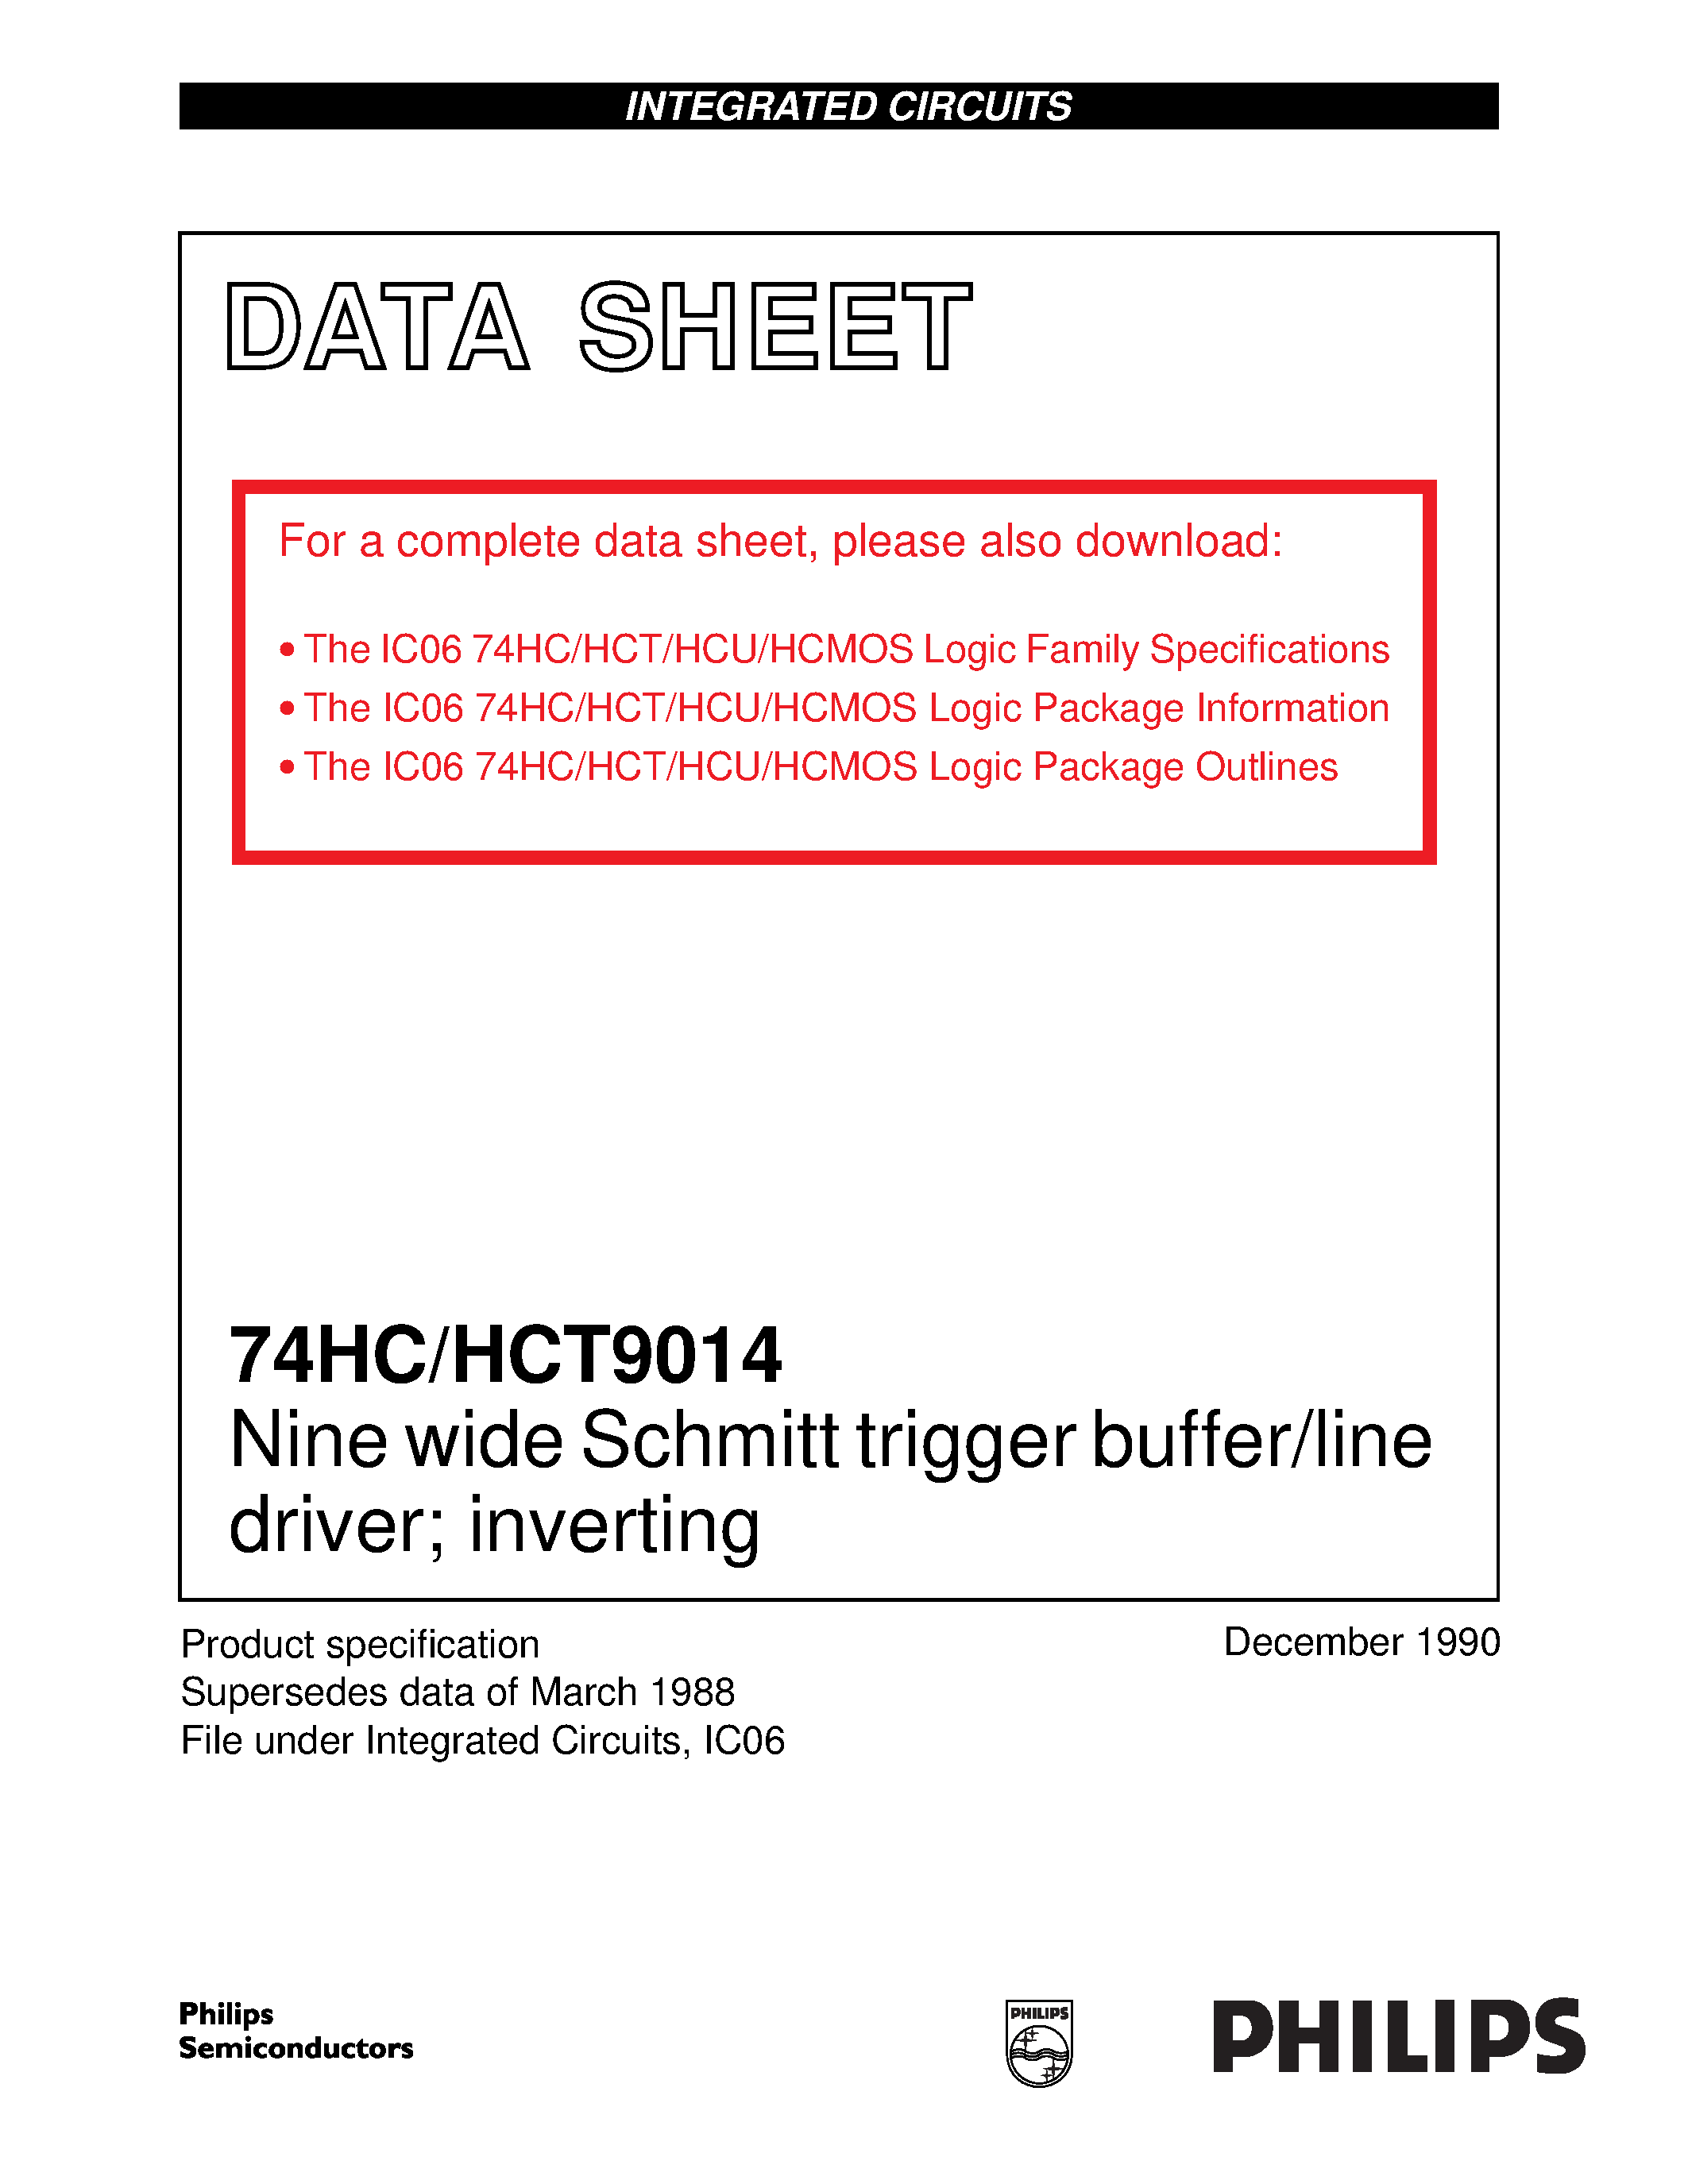 Datasheet 74HCT9014 - Nine wide Schmitt trigger buffer/line driver; inverting page 1